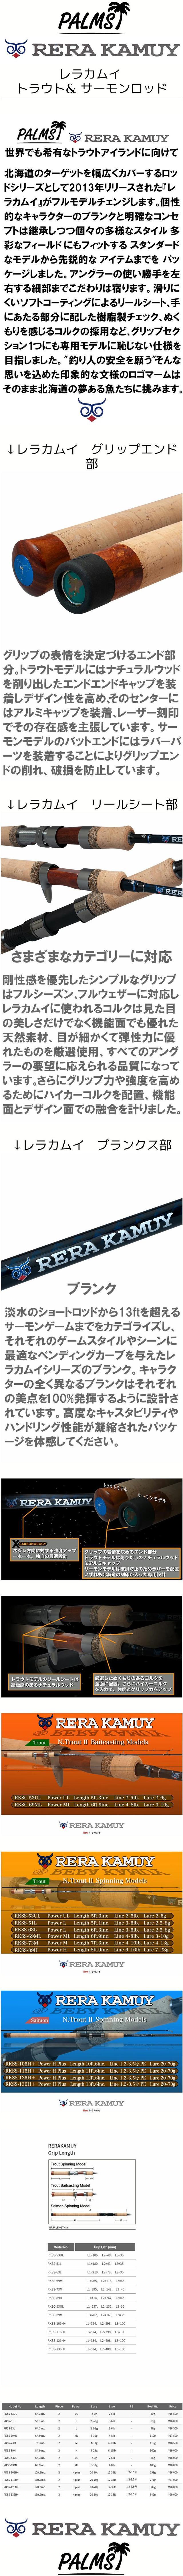 17500円 新作通販 パームス RERA KAMUY RKSS-126H サーモンロッド 未使用